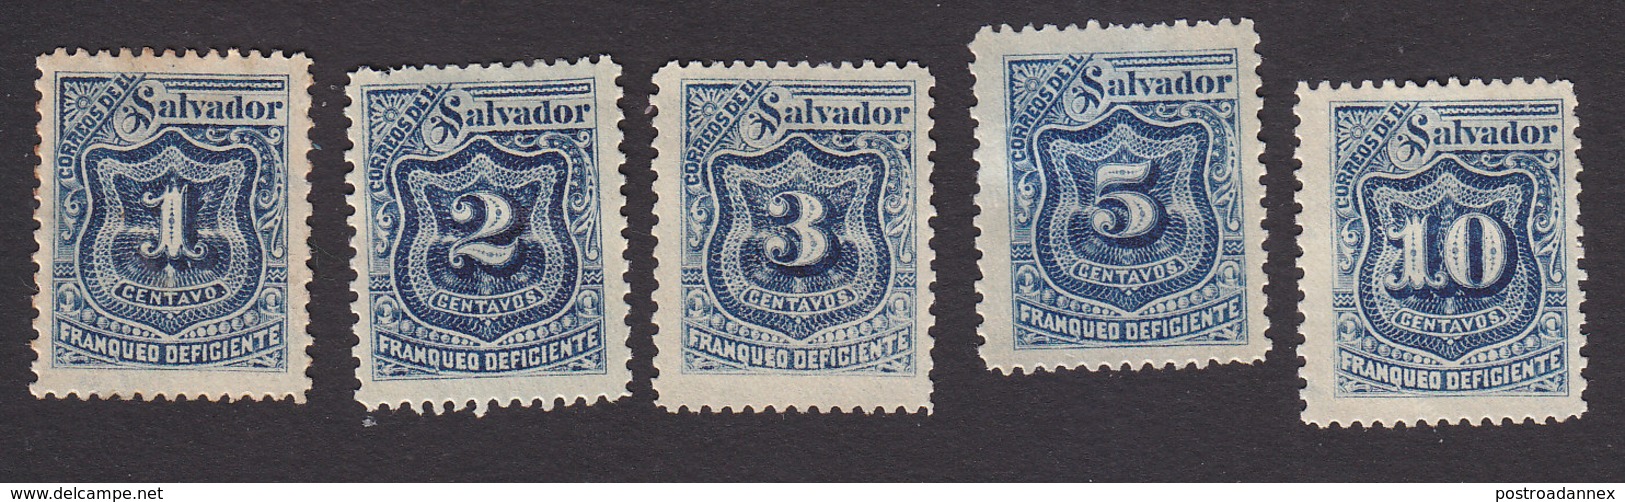 El Salvador, Scott #J25-J29, Mint Hinged/No Gum, Postage Due, Issued 1897 - El Salvador